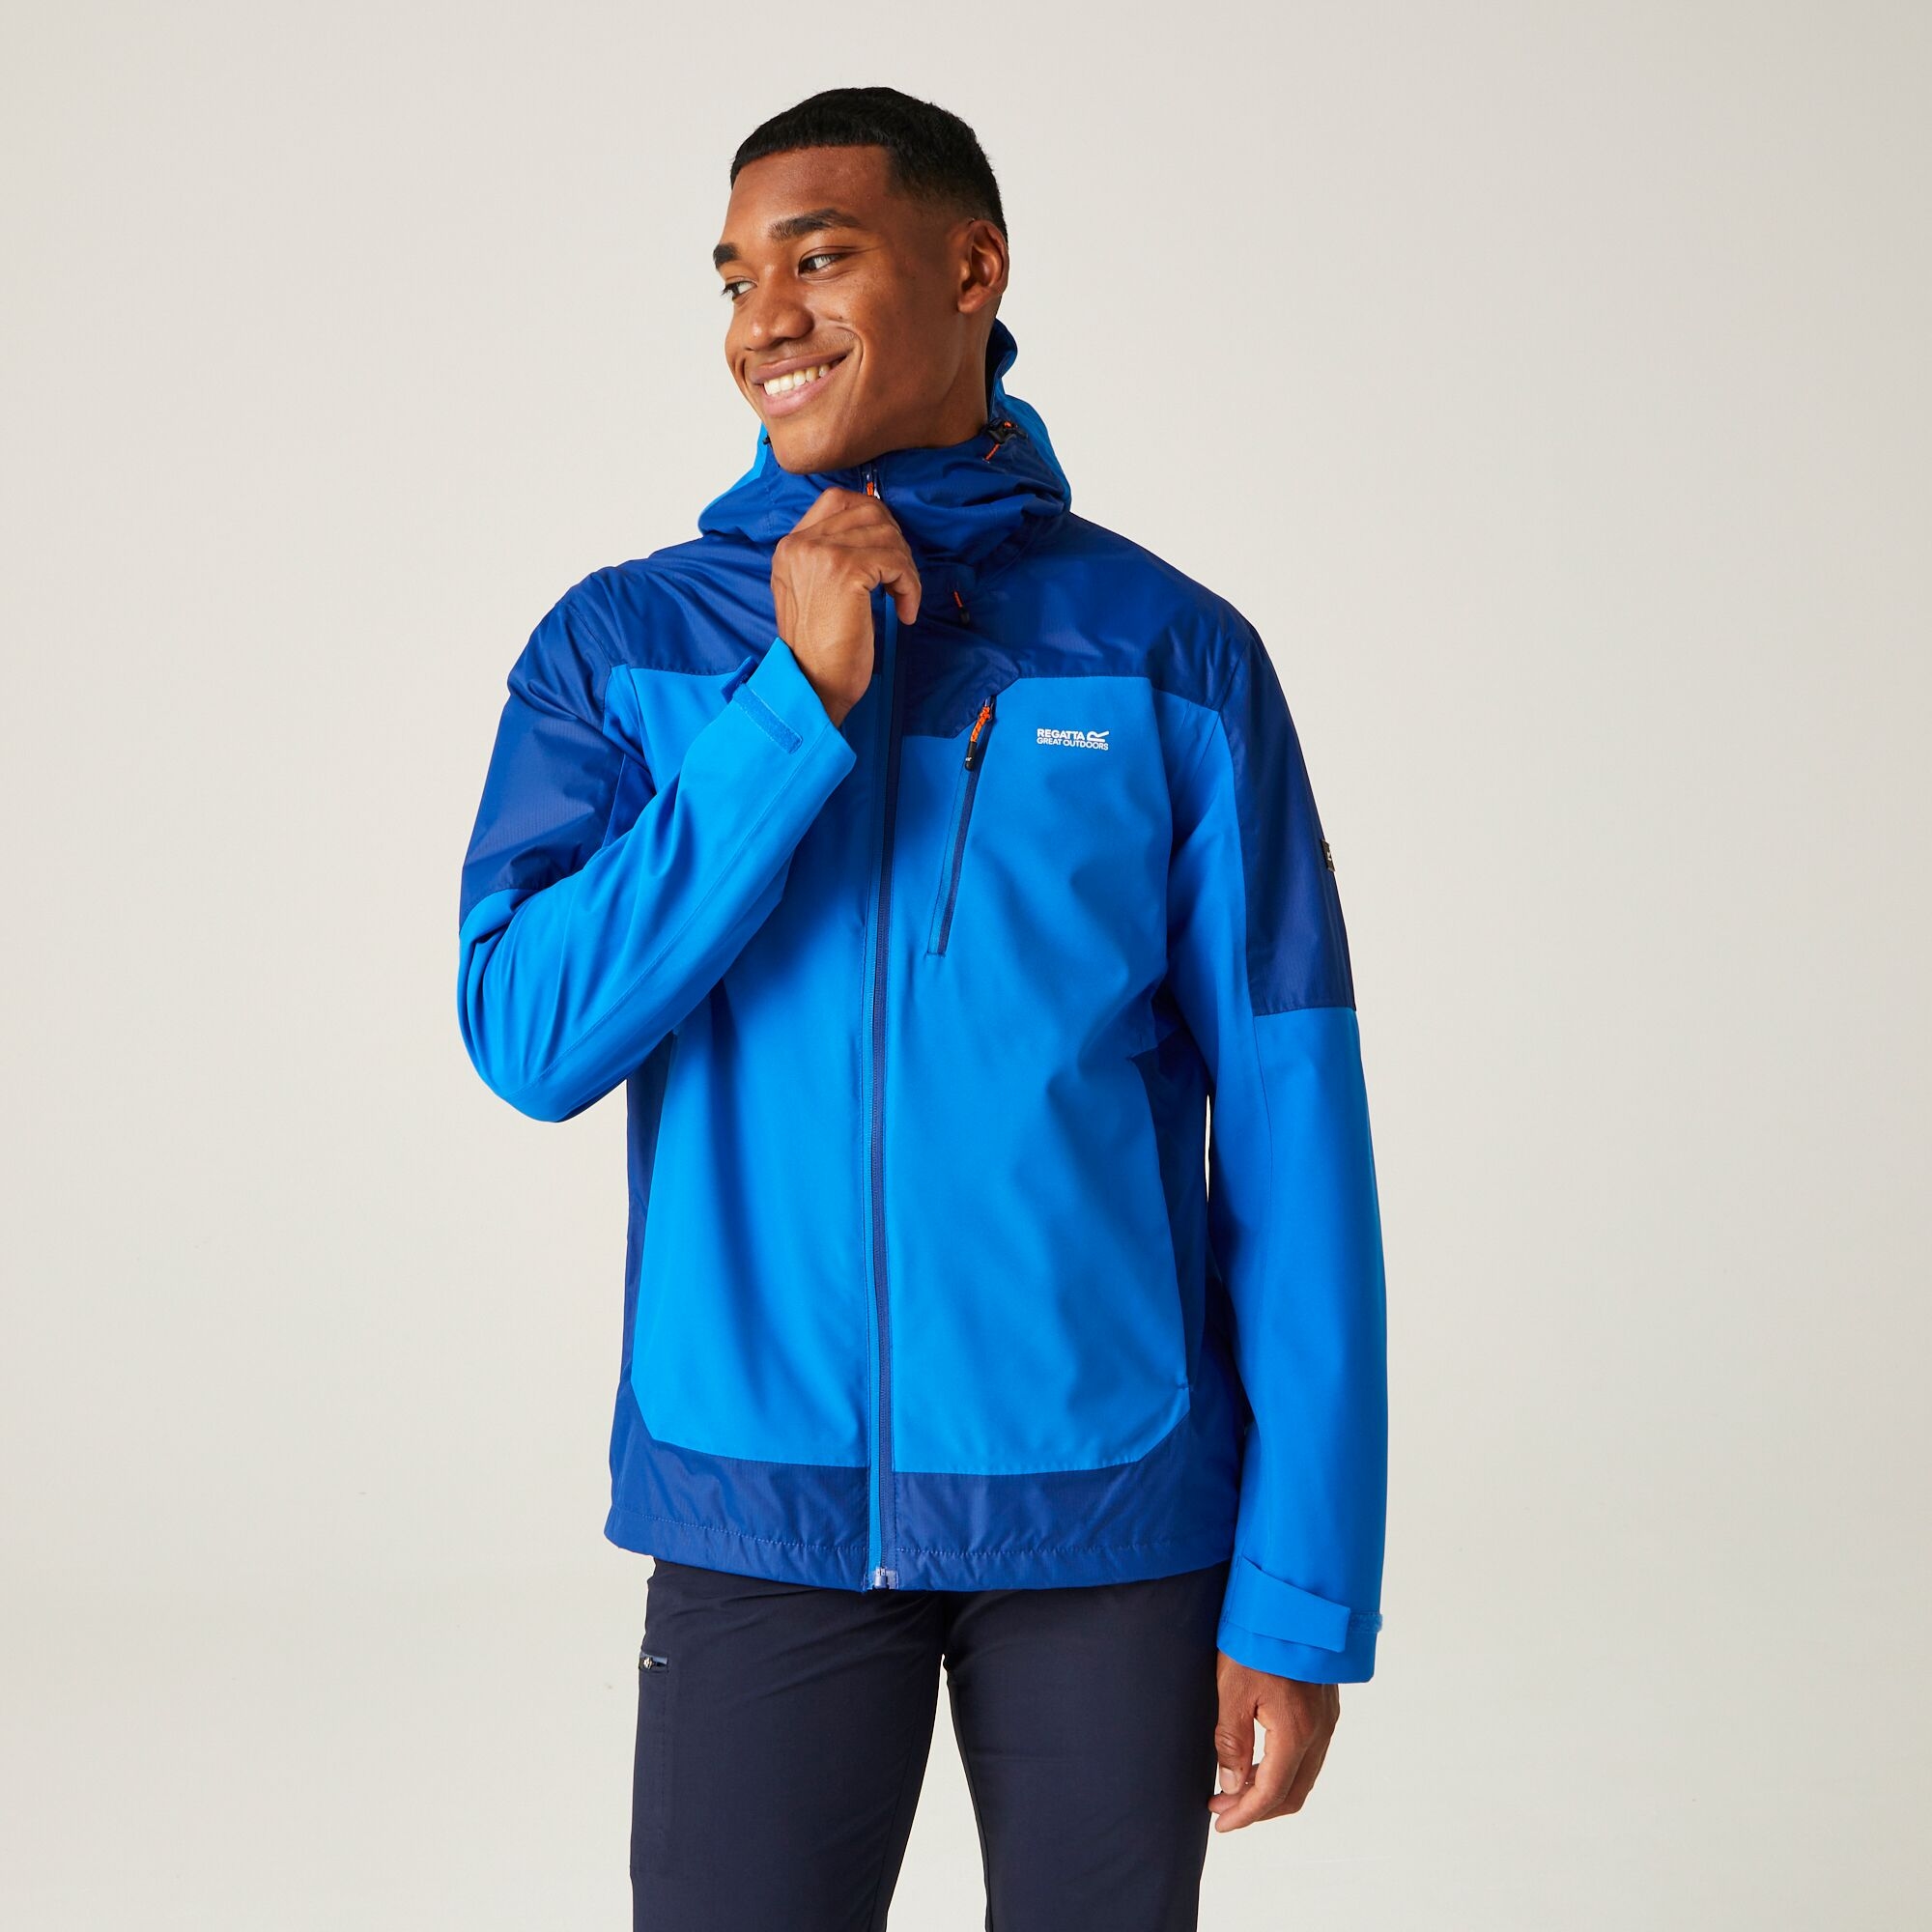 Regatta Highton Stretch Iii Wasserdichte Jacke für Herren Blau, Größe: Xxl product